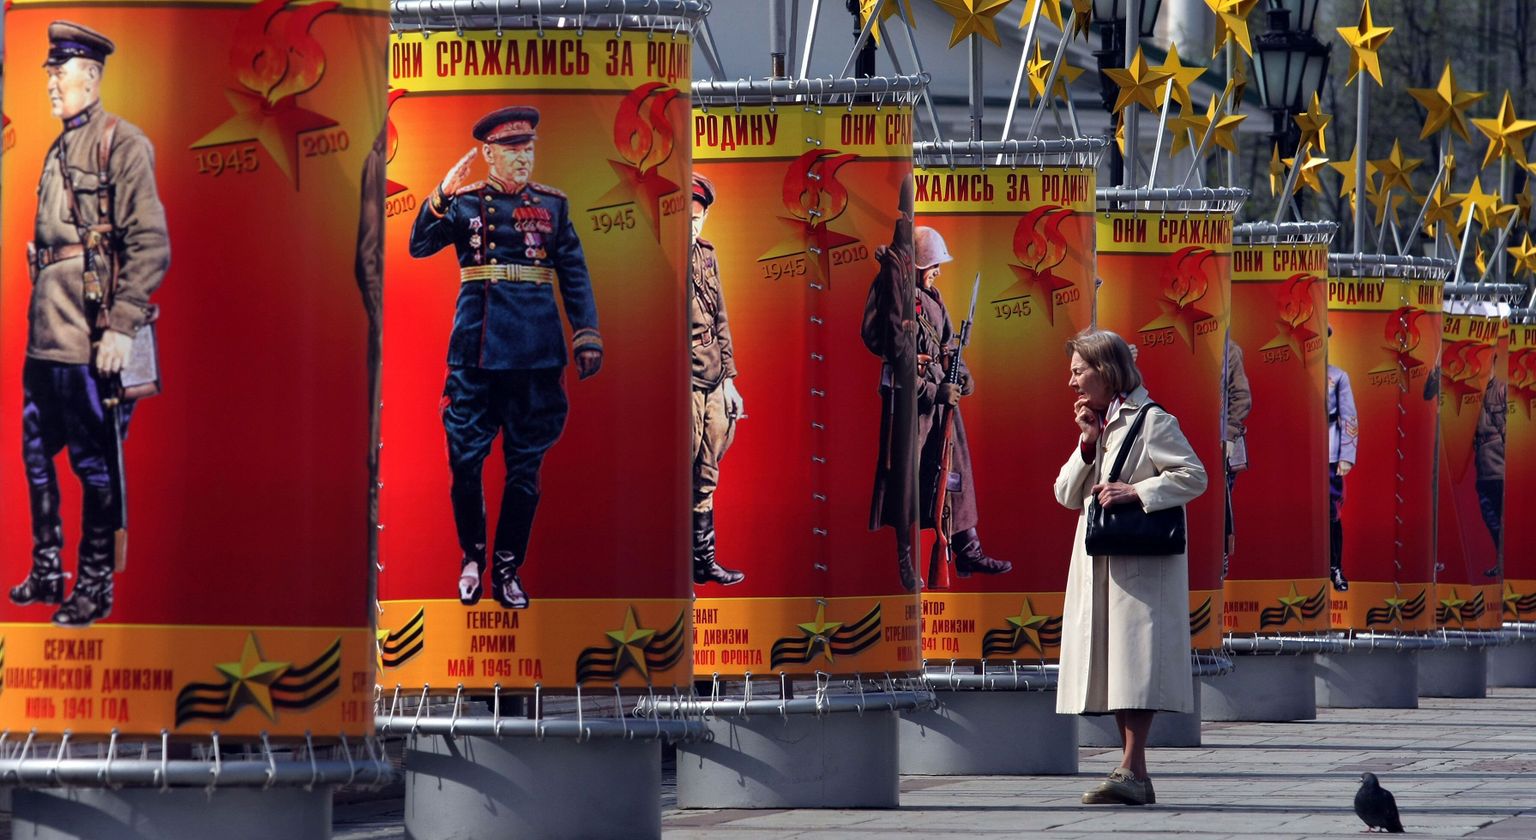 Võidupüha tähistamiseks üleriputatud plakatid Moskvas.